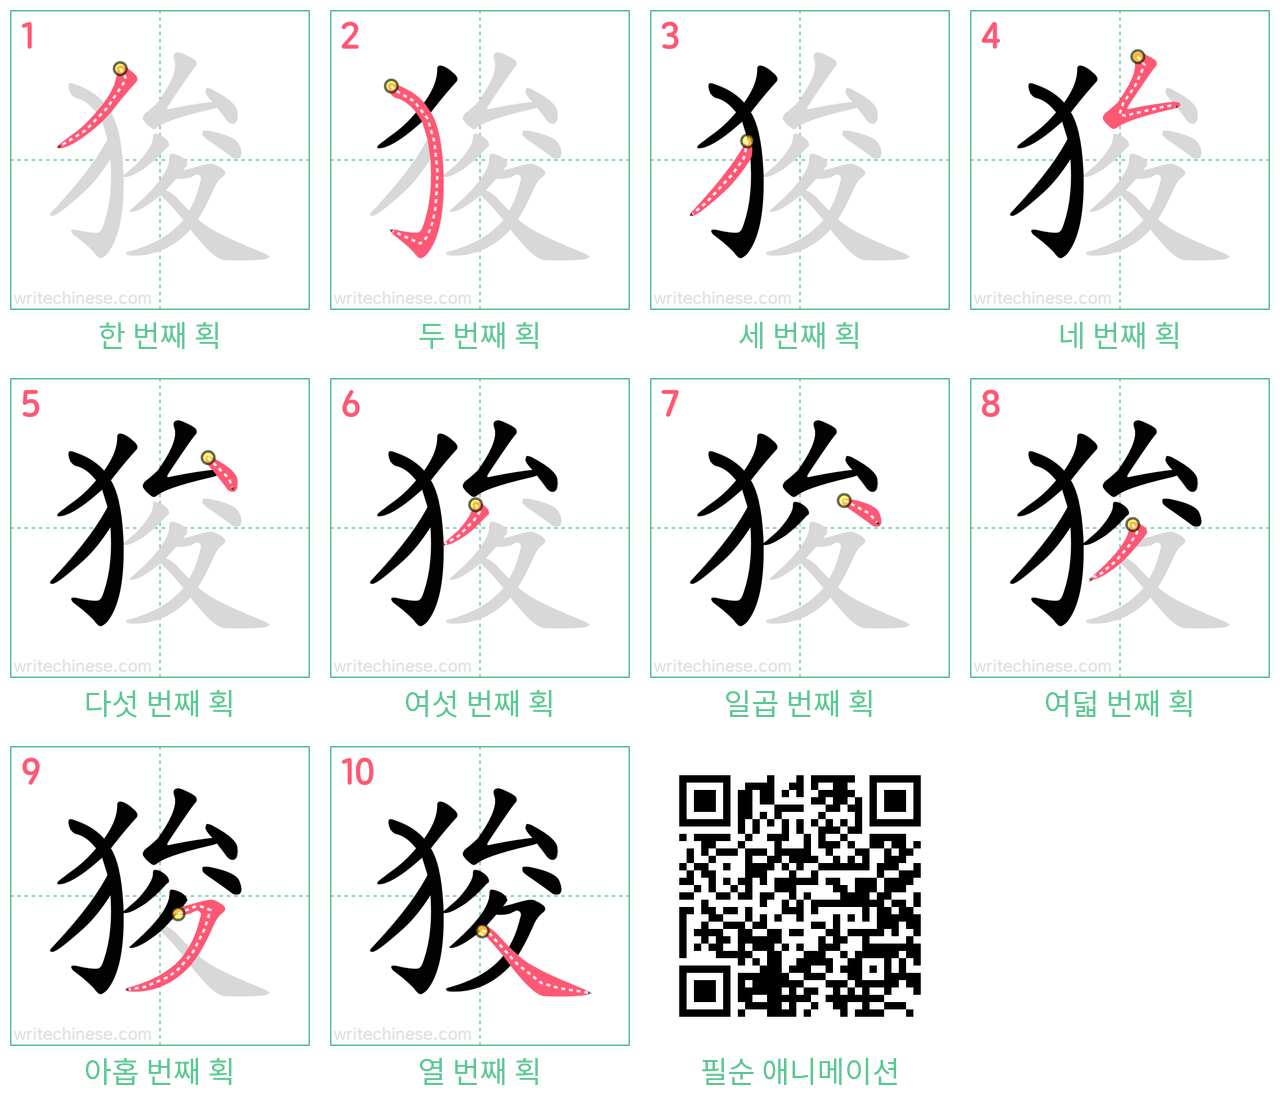 狻 step-by-step stroke order diagrams